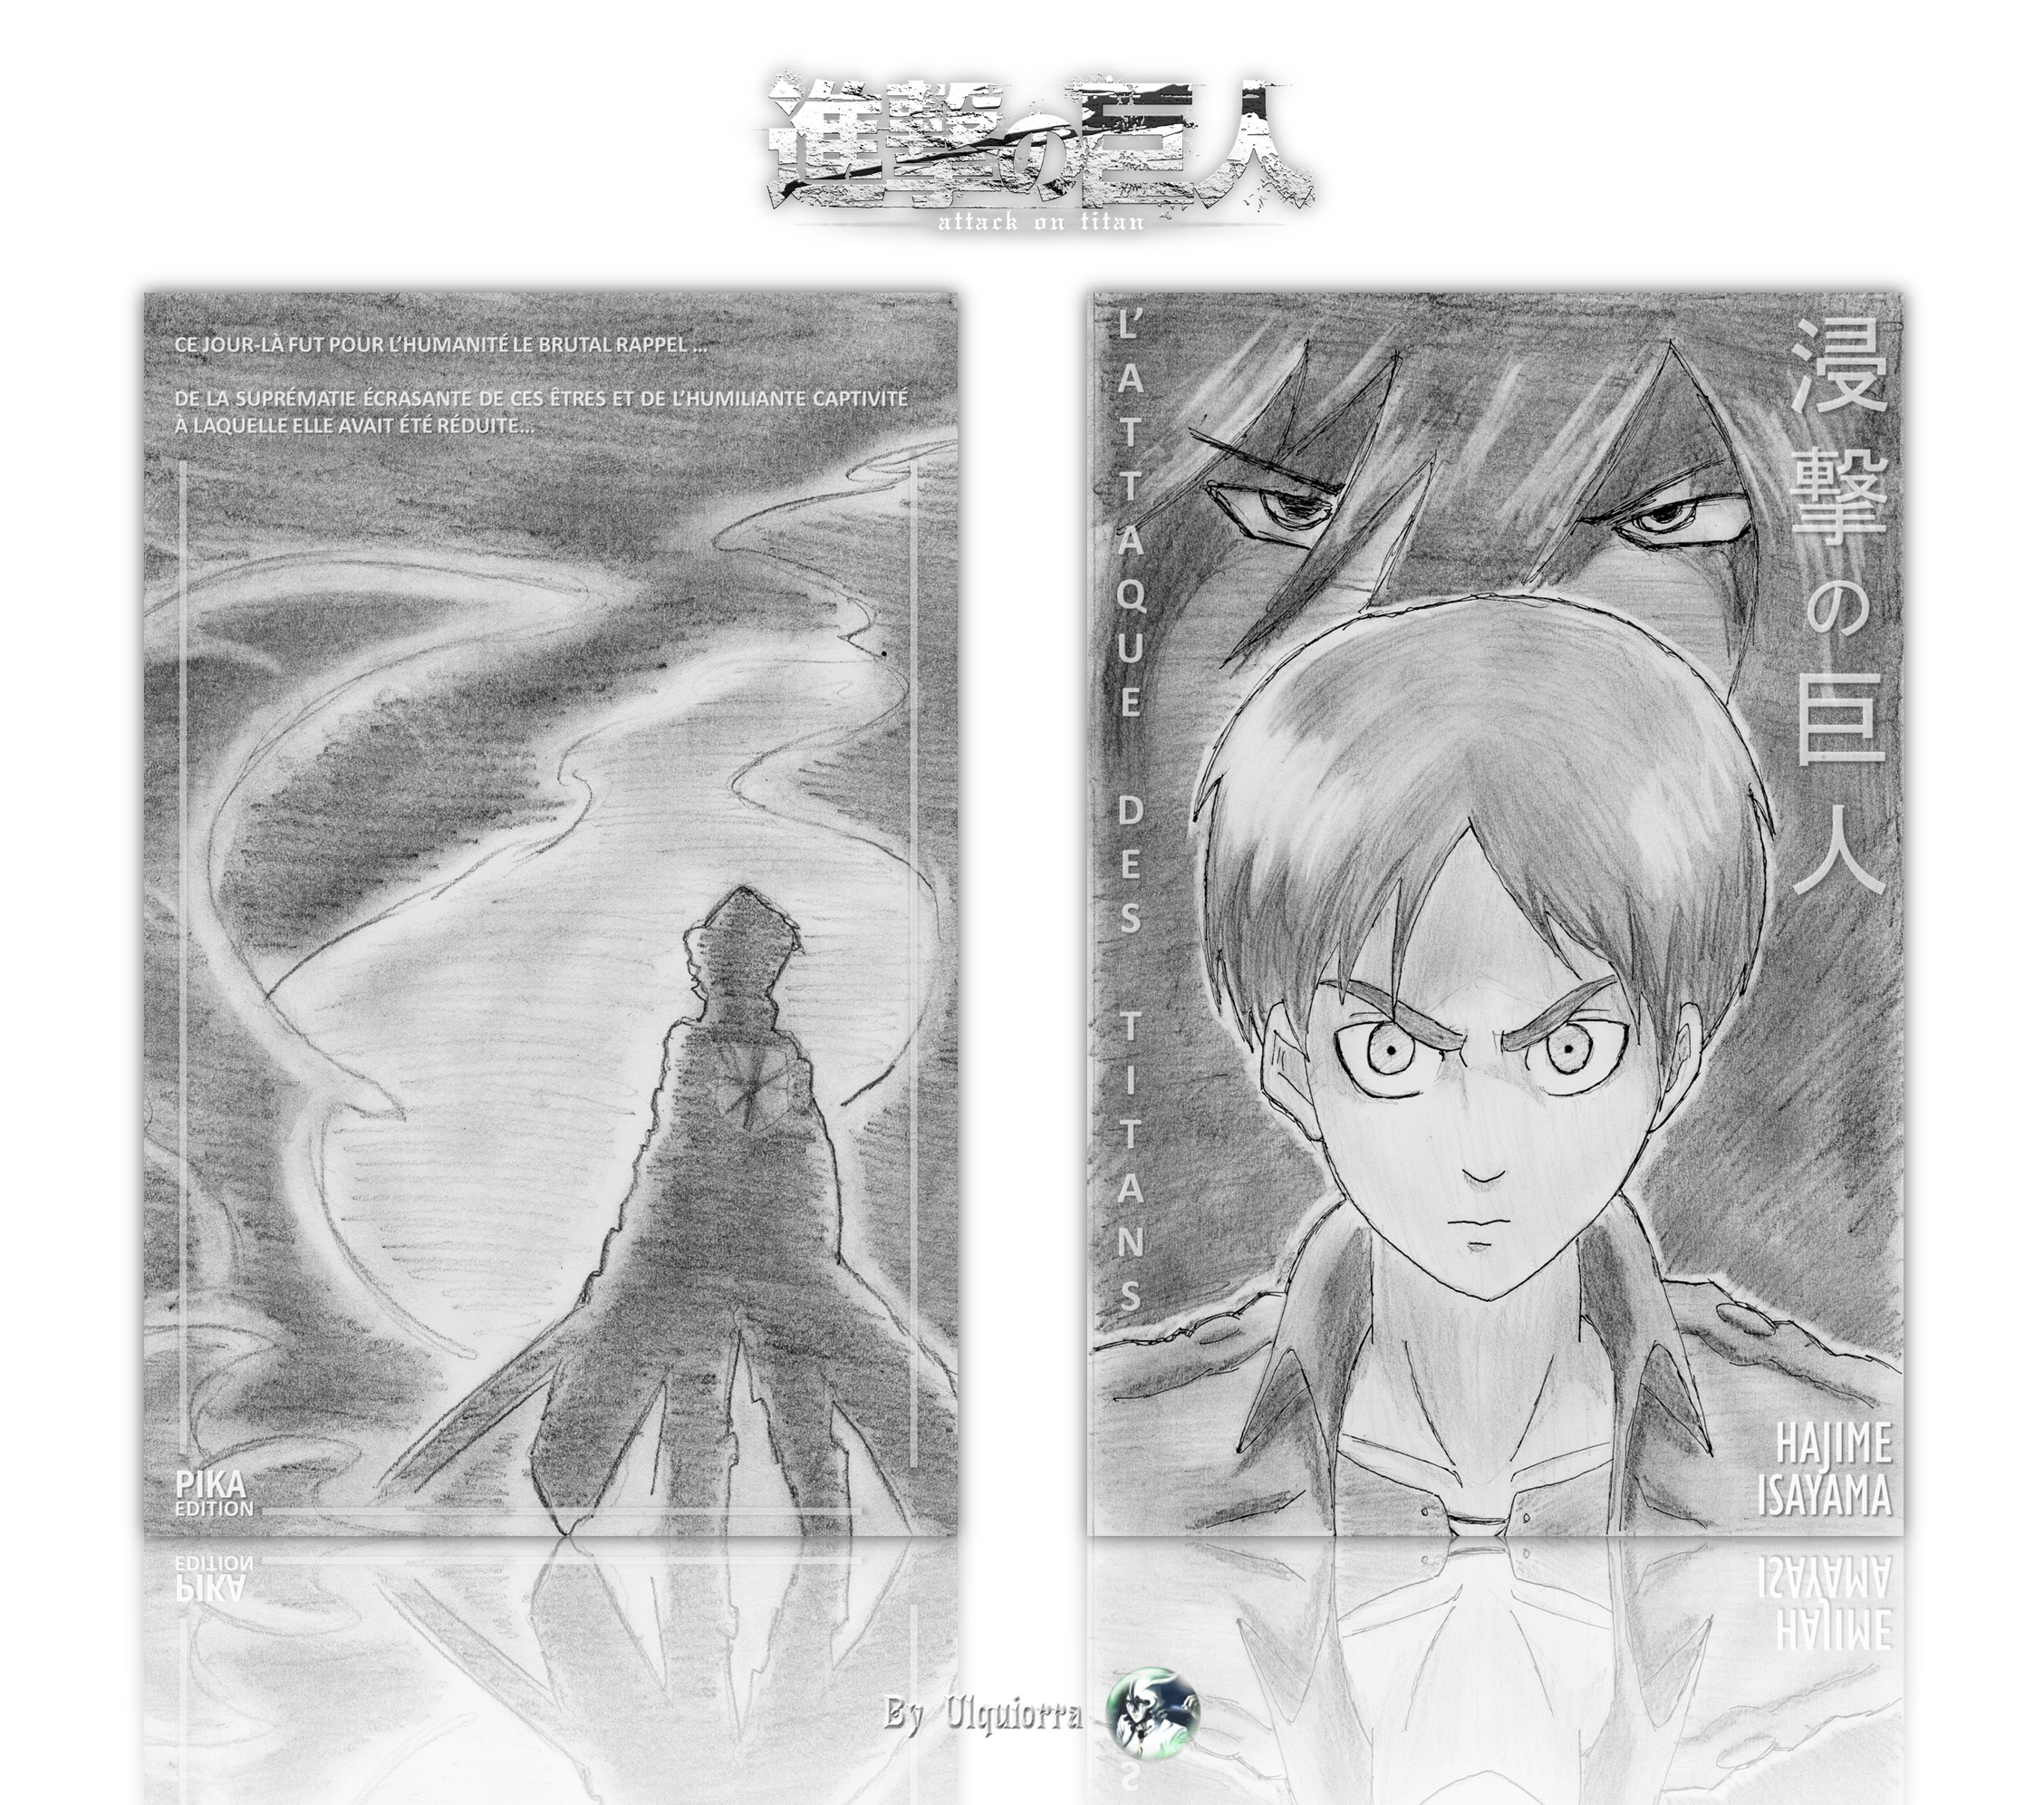 Shingeki no Kyojin (attack on titan) box cover